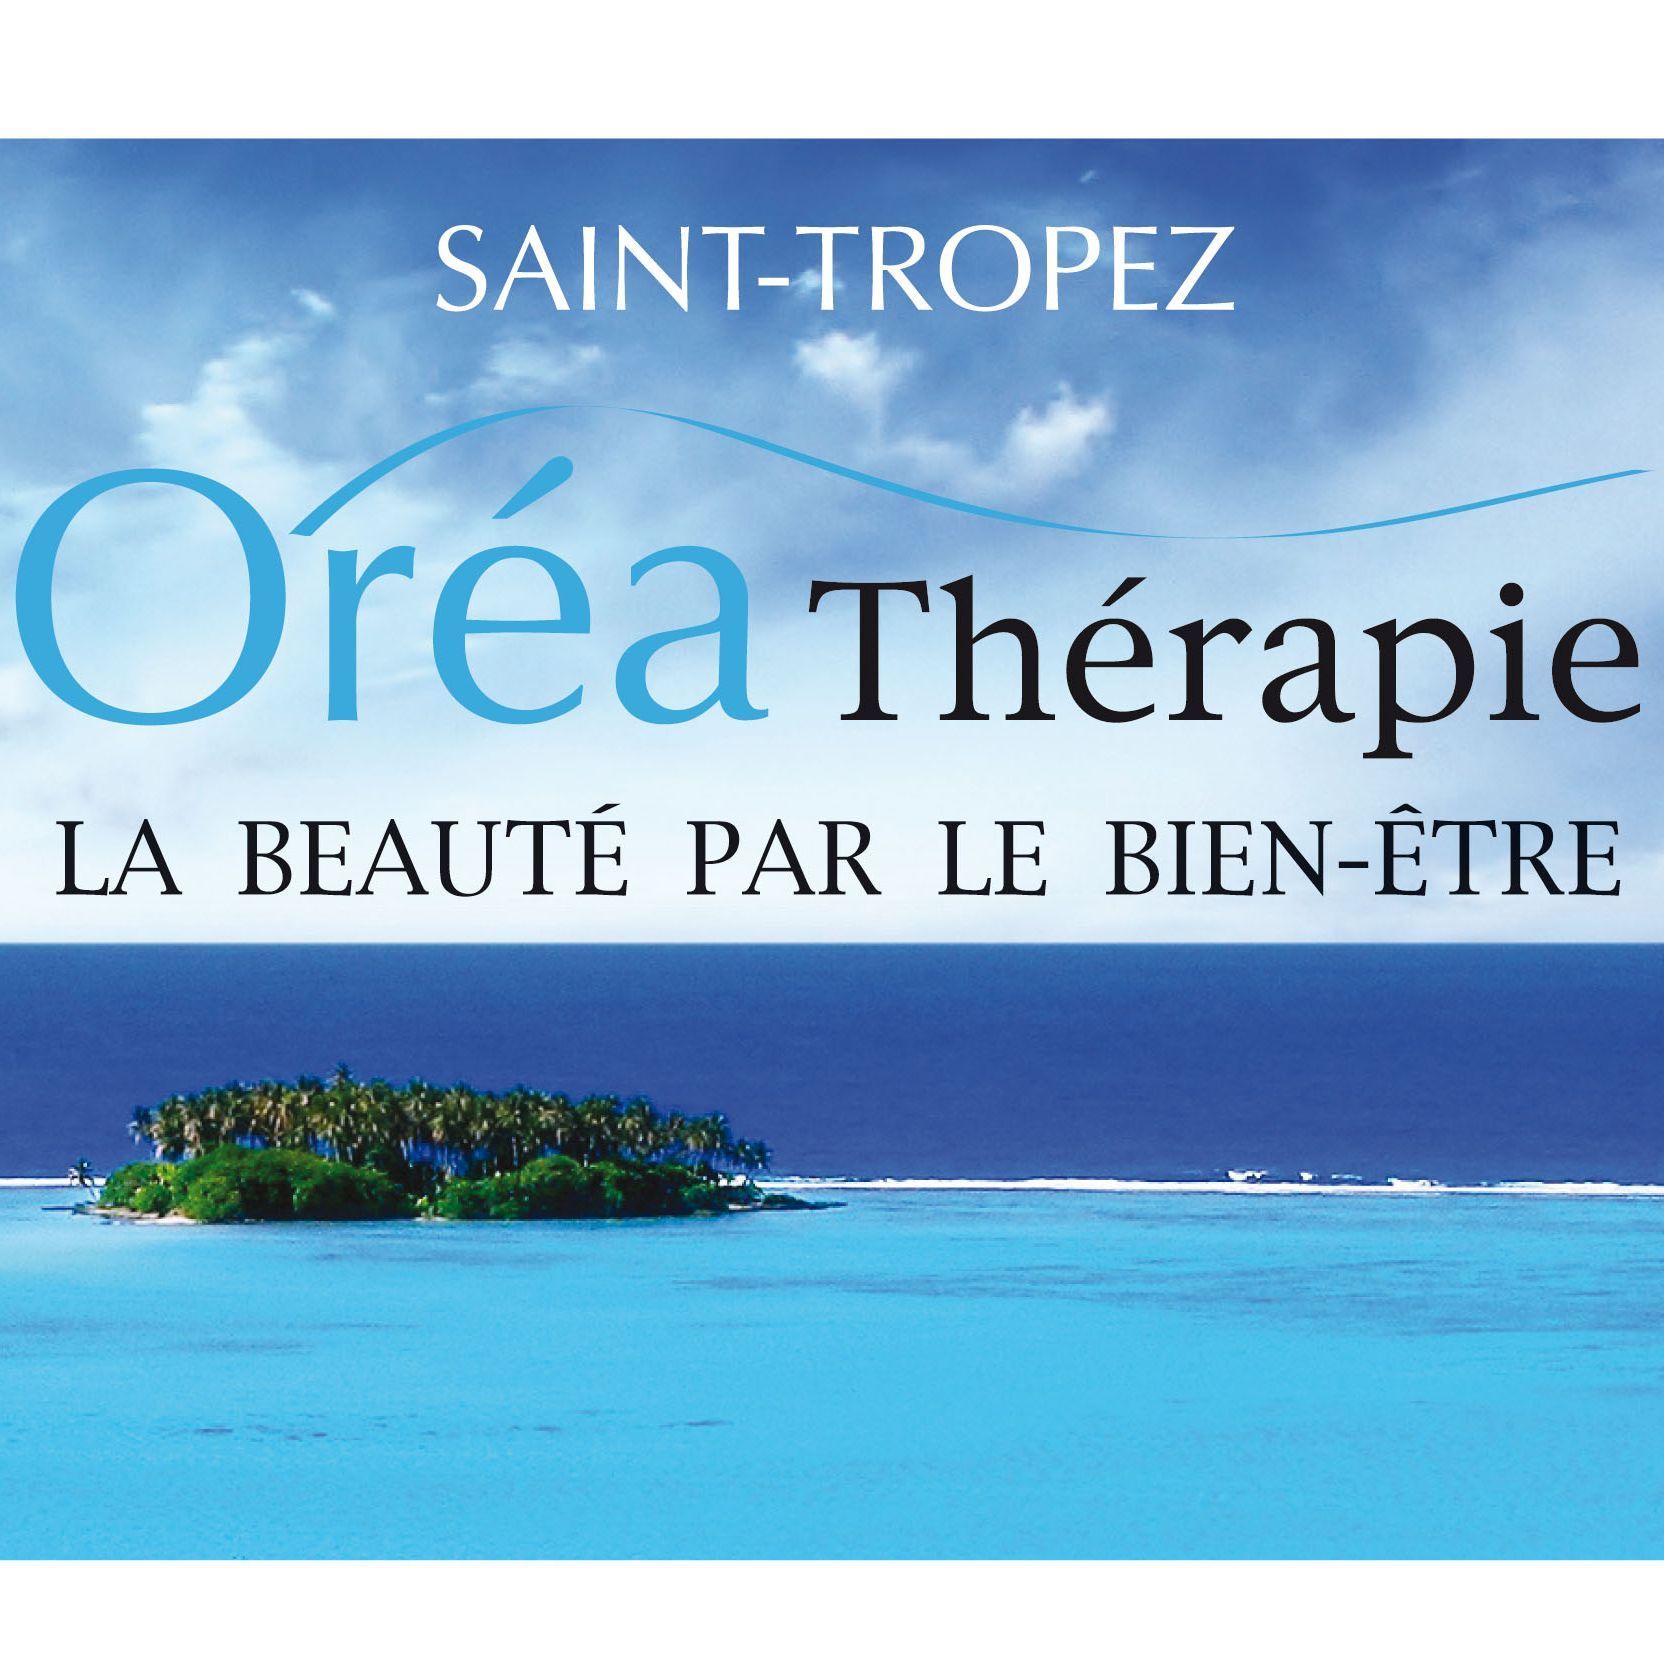 Oréathérapie, Avenue du Cap, 83990, Saint-Tropez